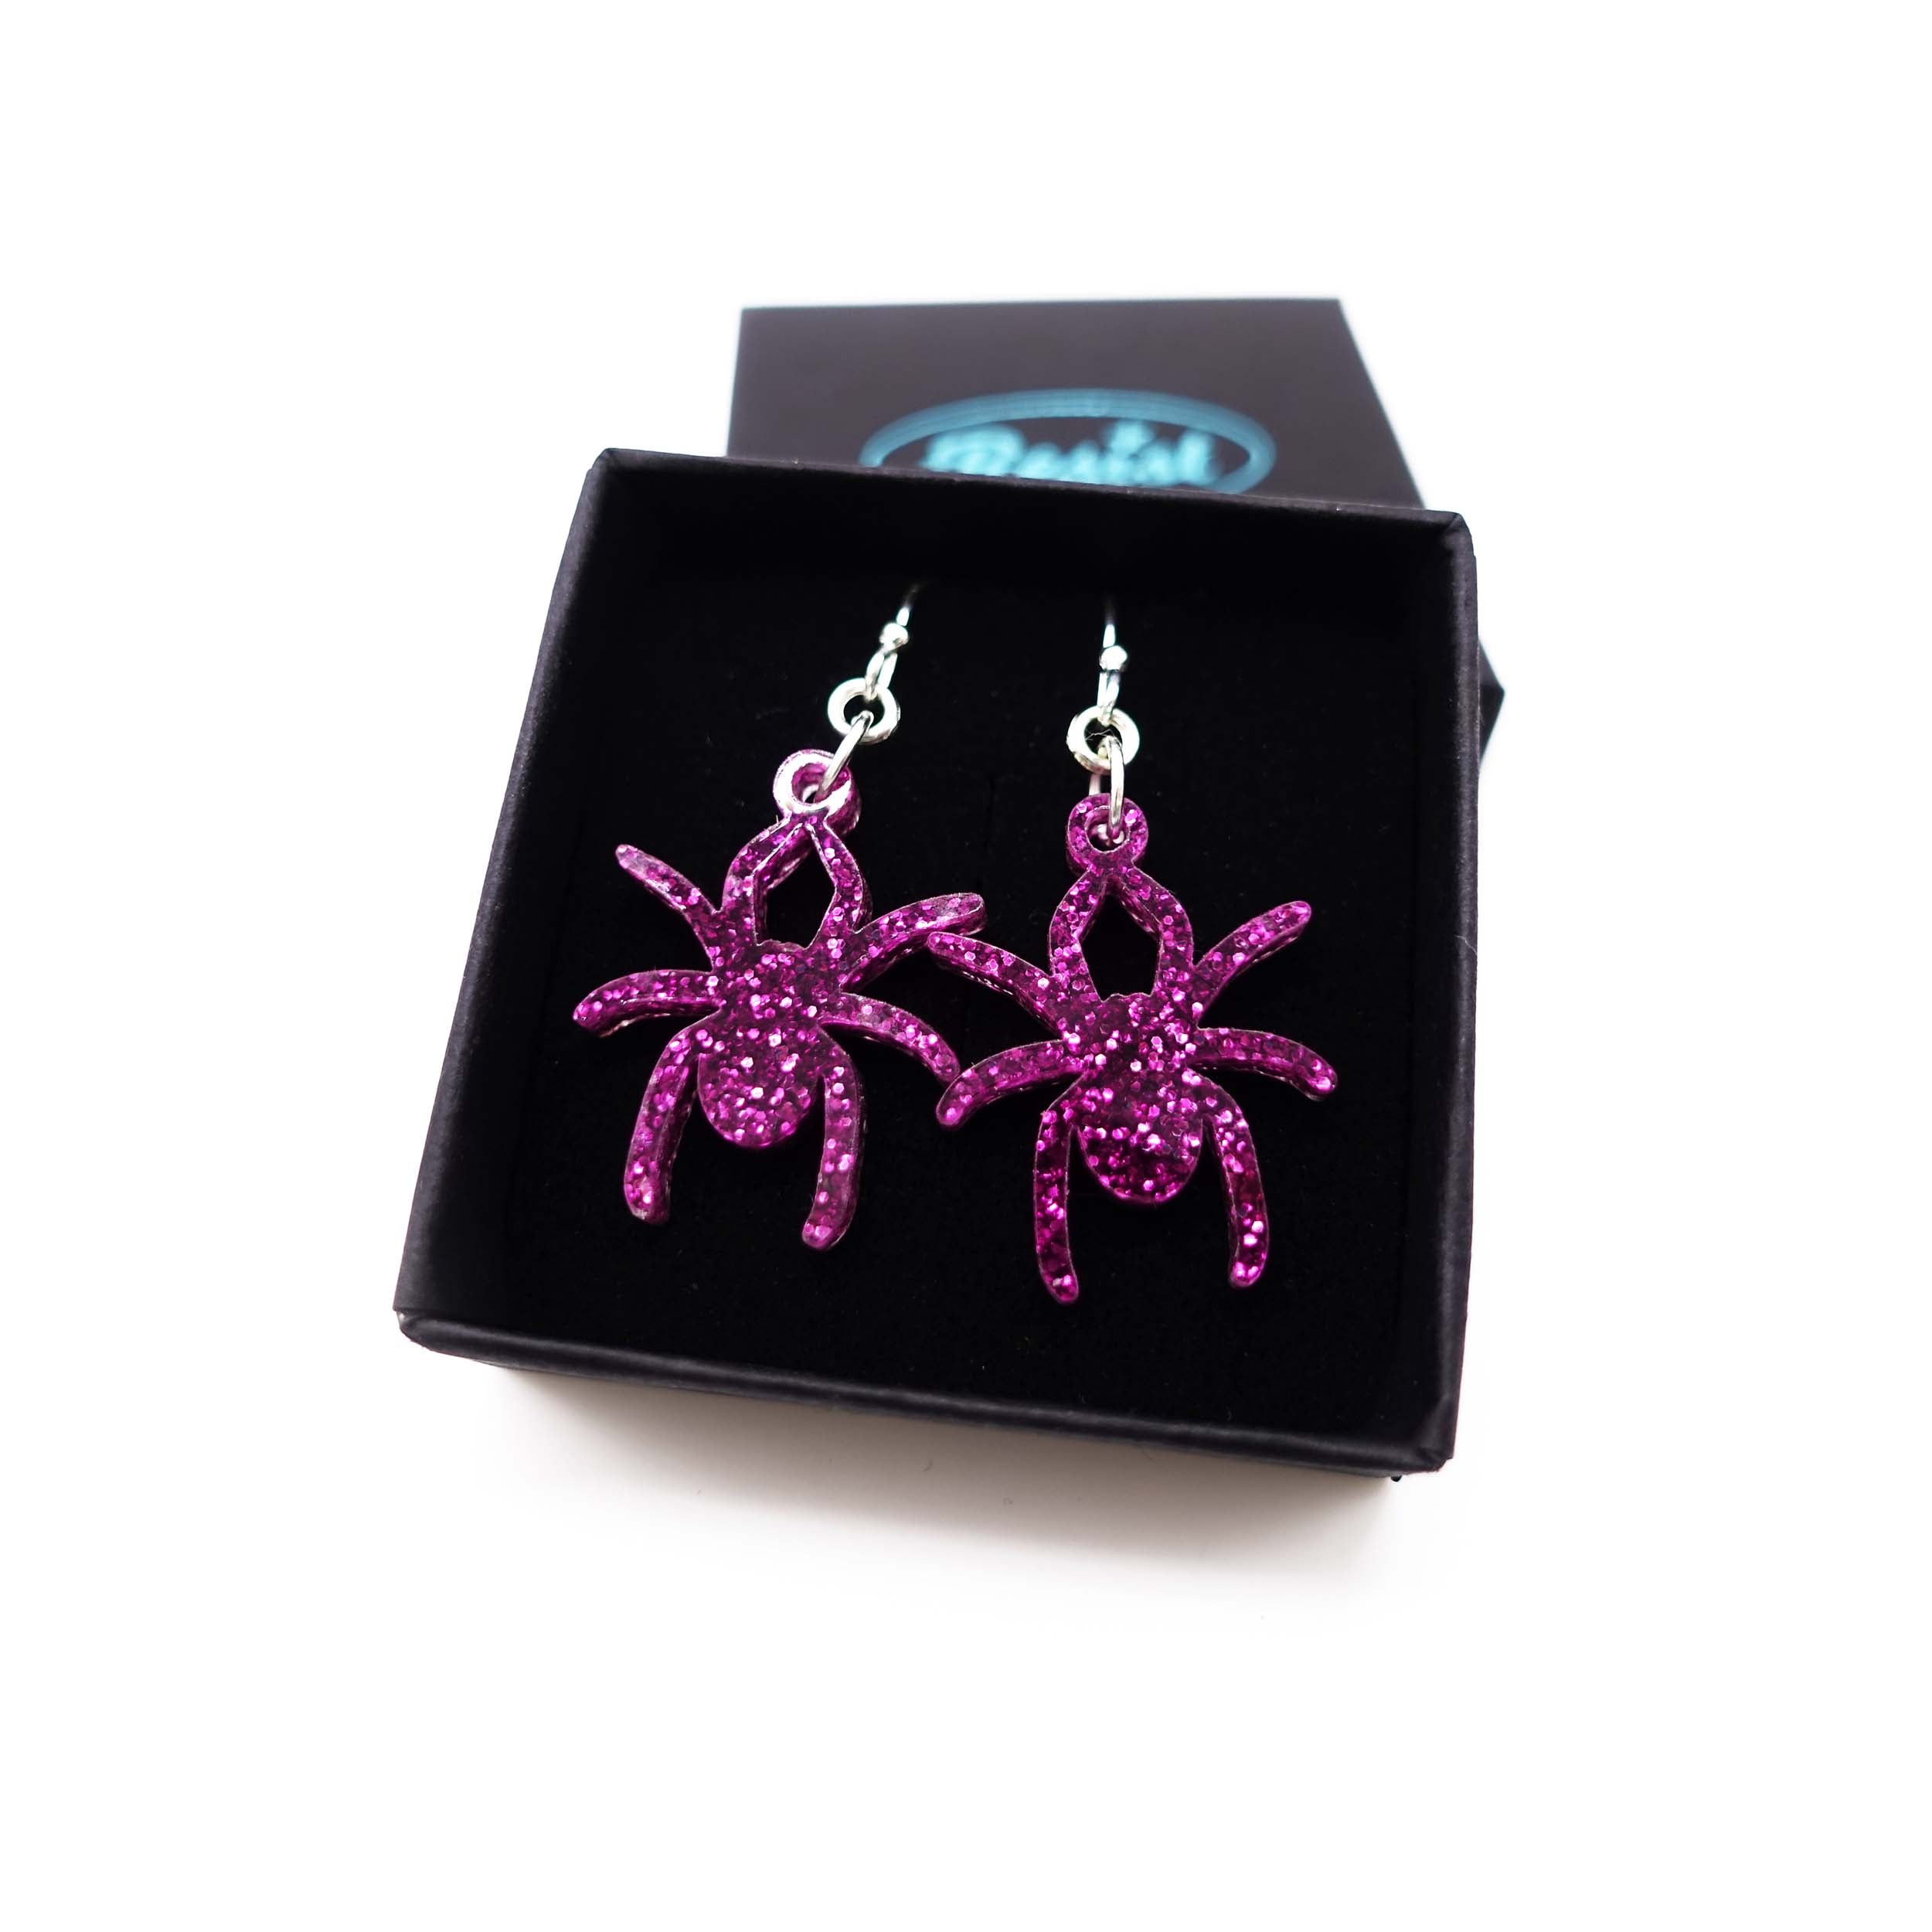 Lady Hale commemorative spider earrings in purple glitter  shown in box.